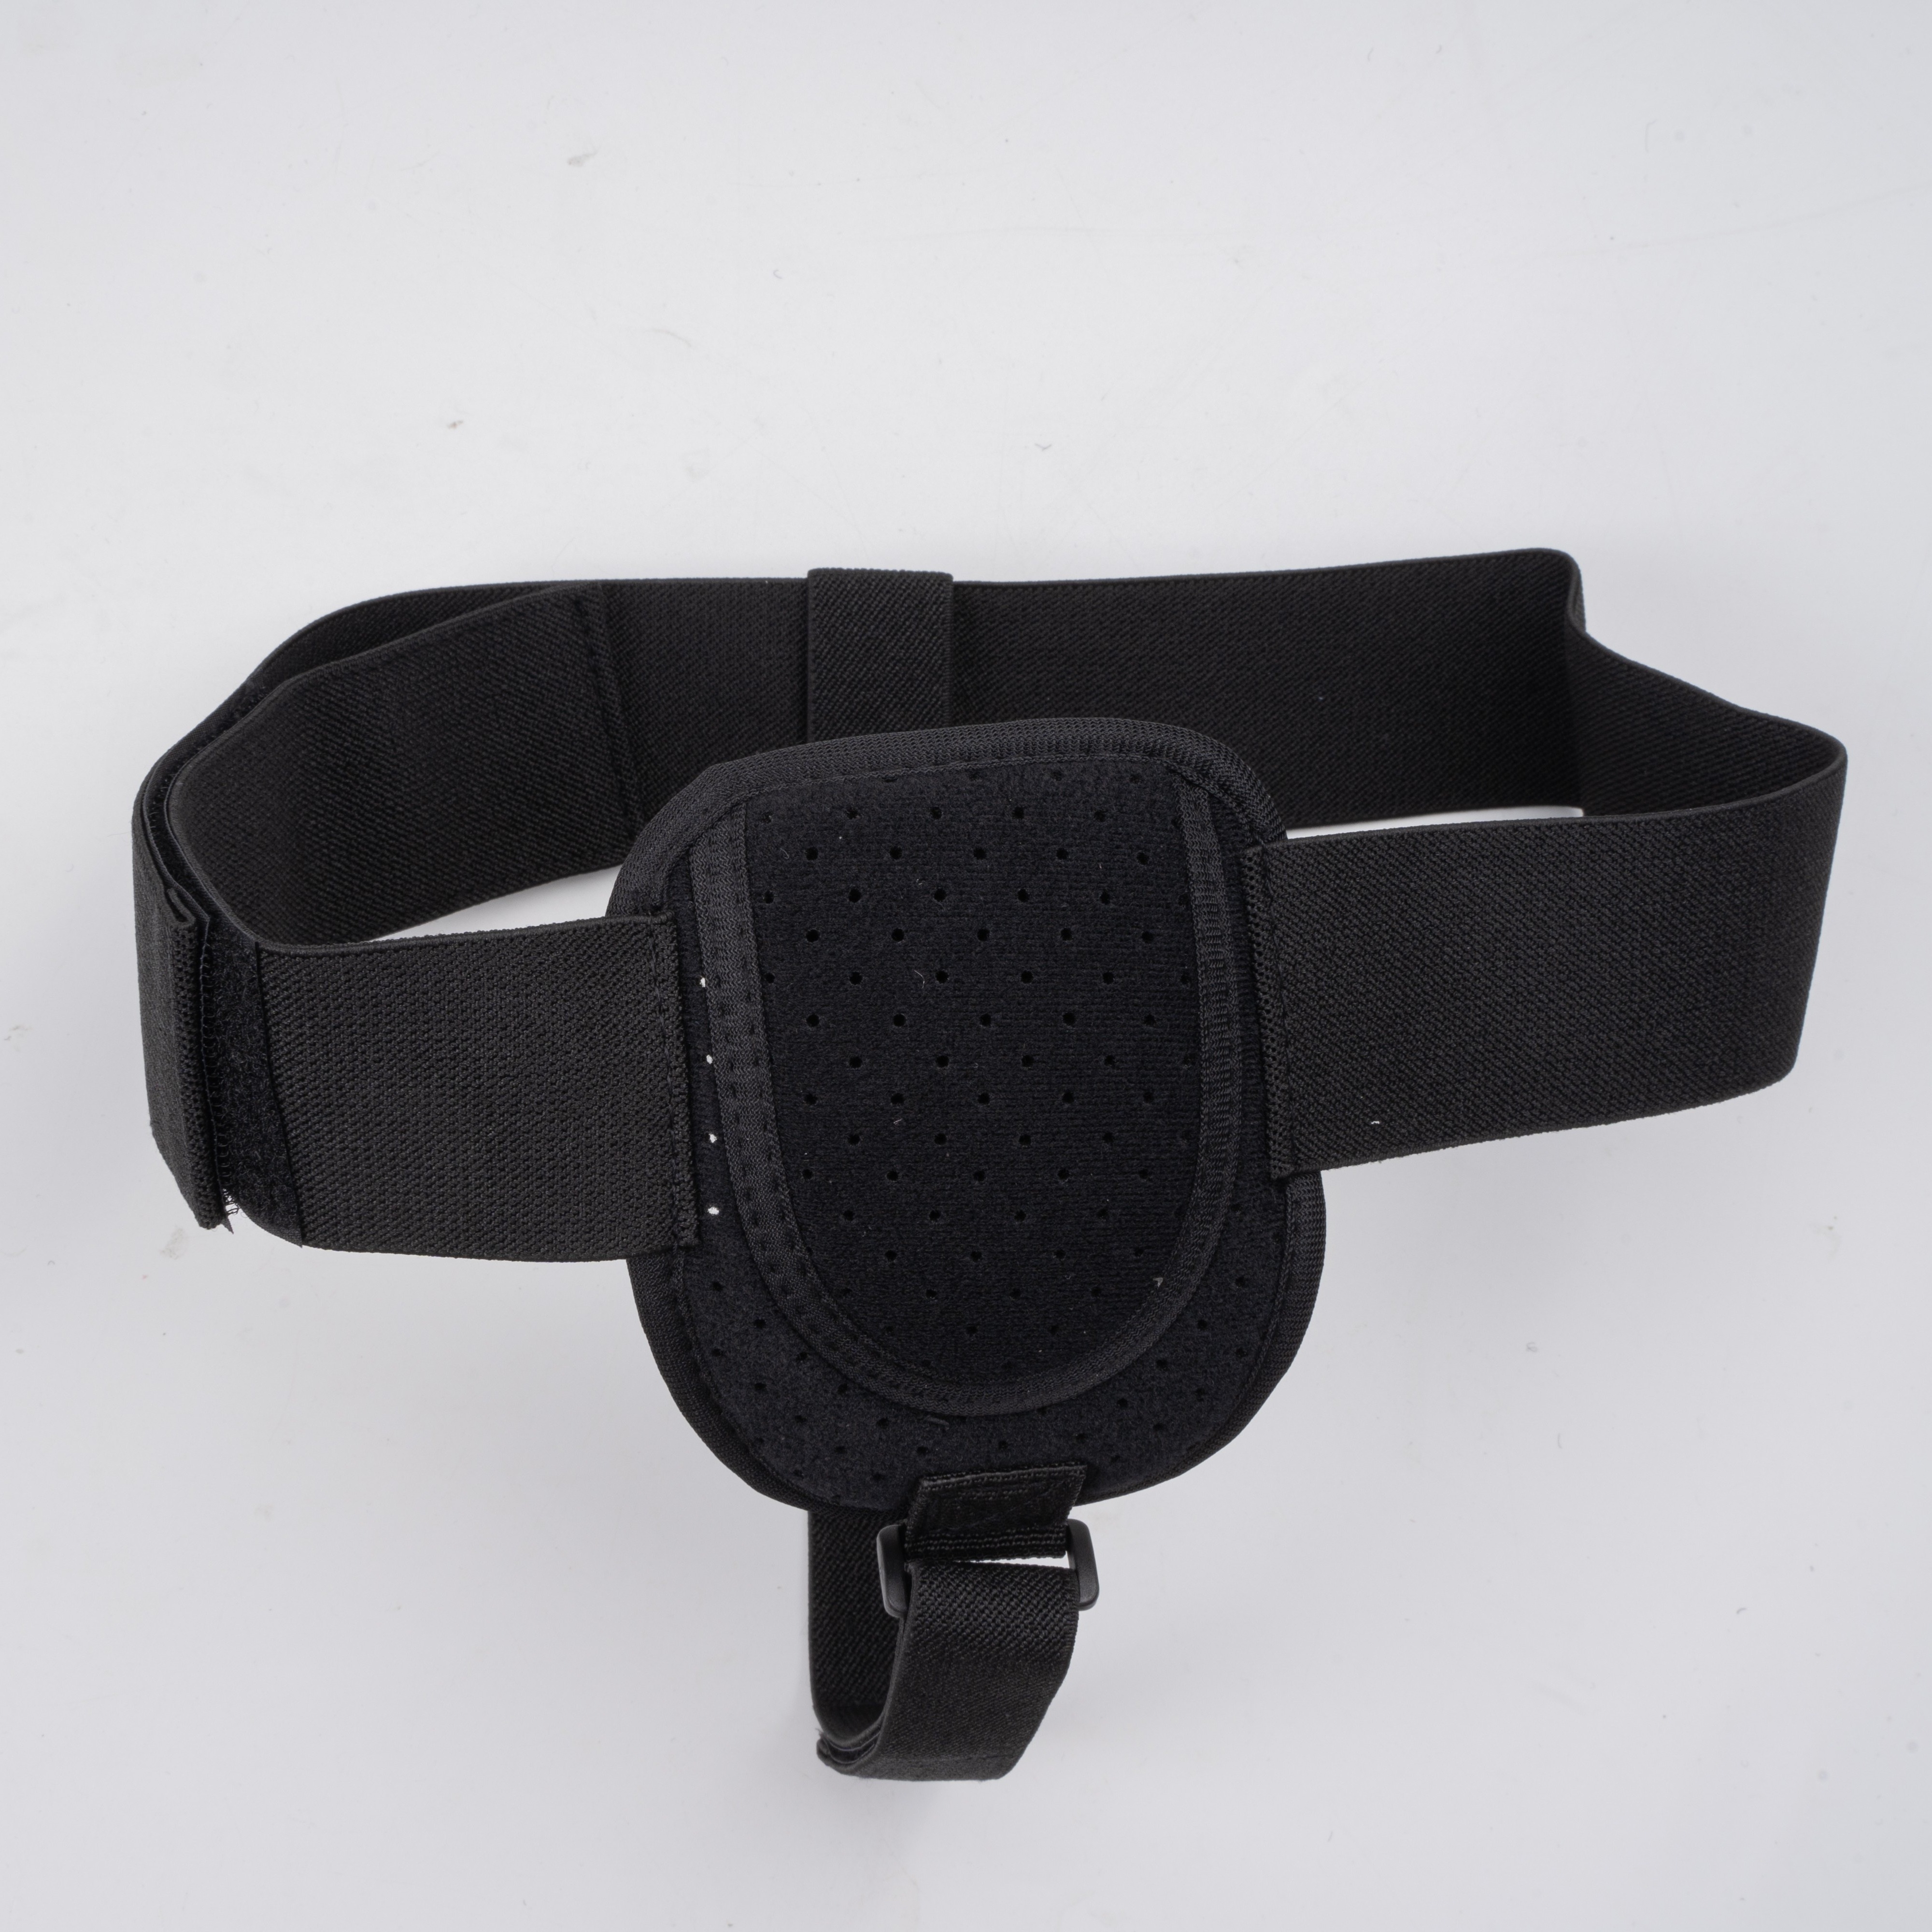 Cinturón de hernia para hombres Hernia inguinal – Cinturón de refuerzo para  la ingle para mujeres o hombres Abdominal 2 almohadillas de compresión